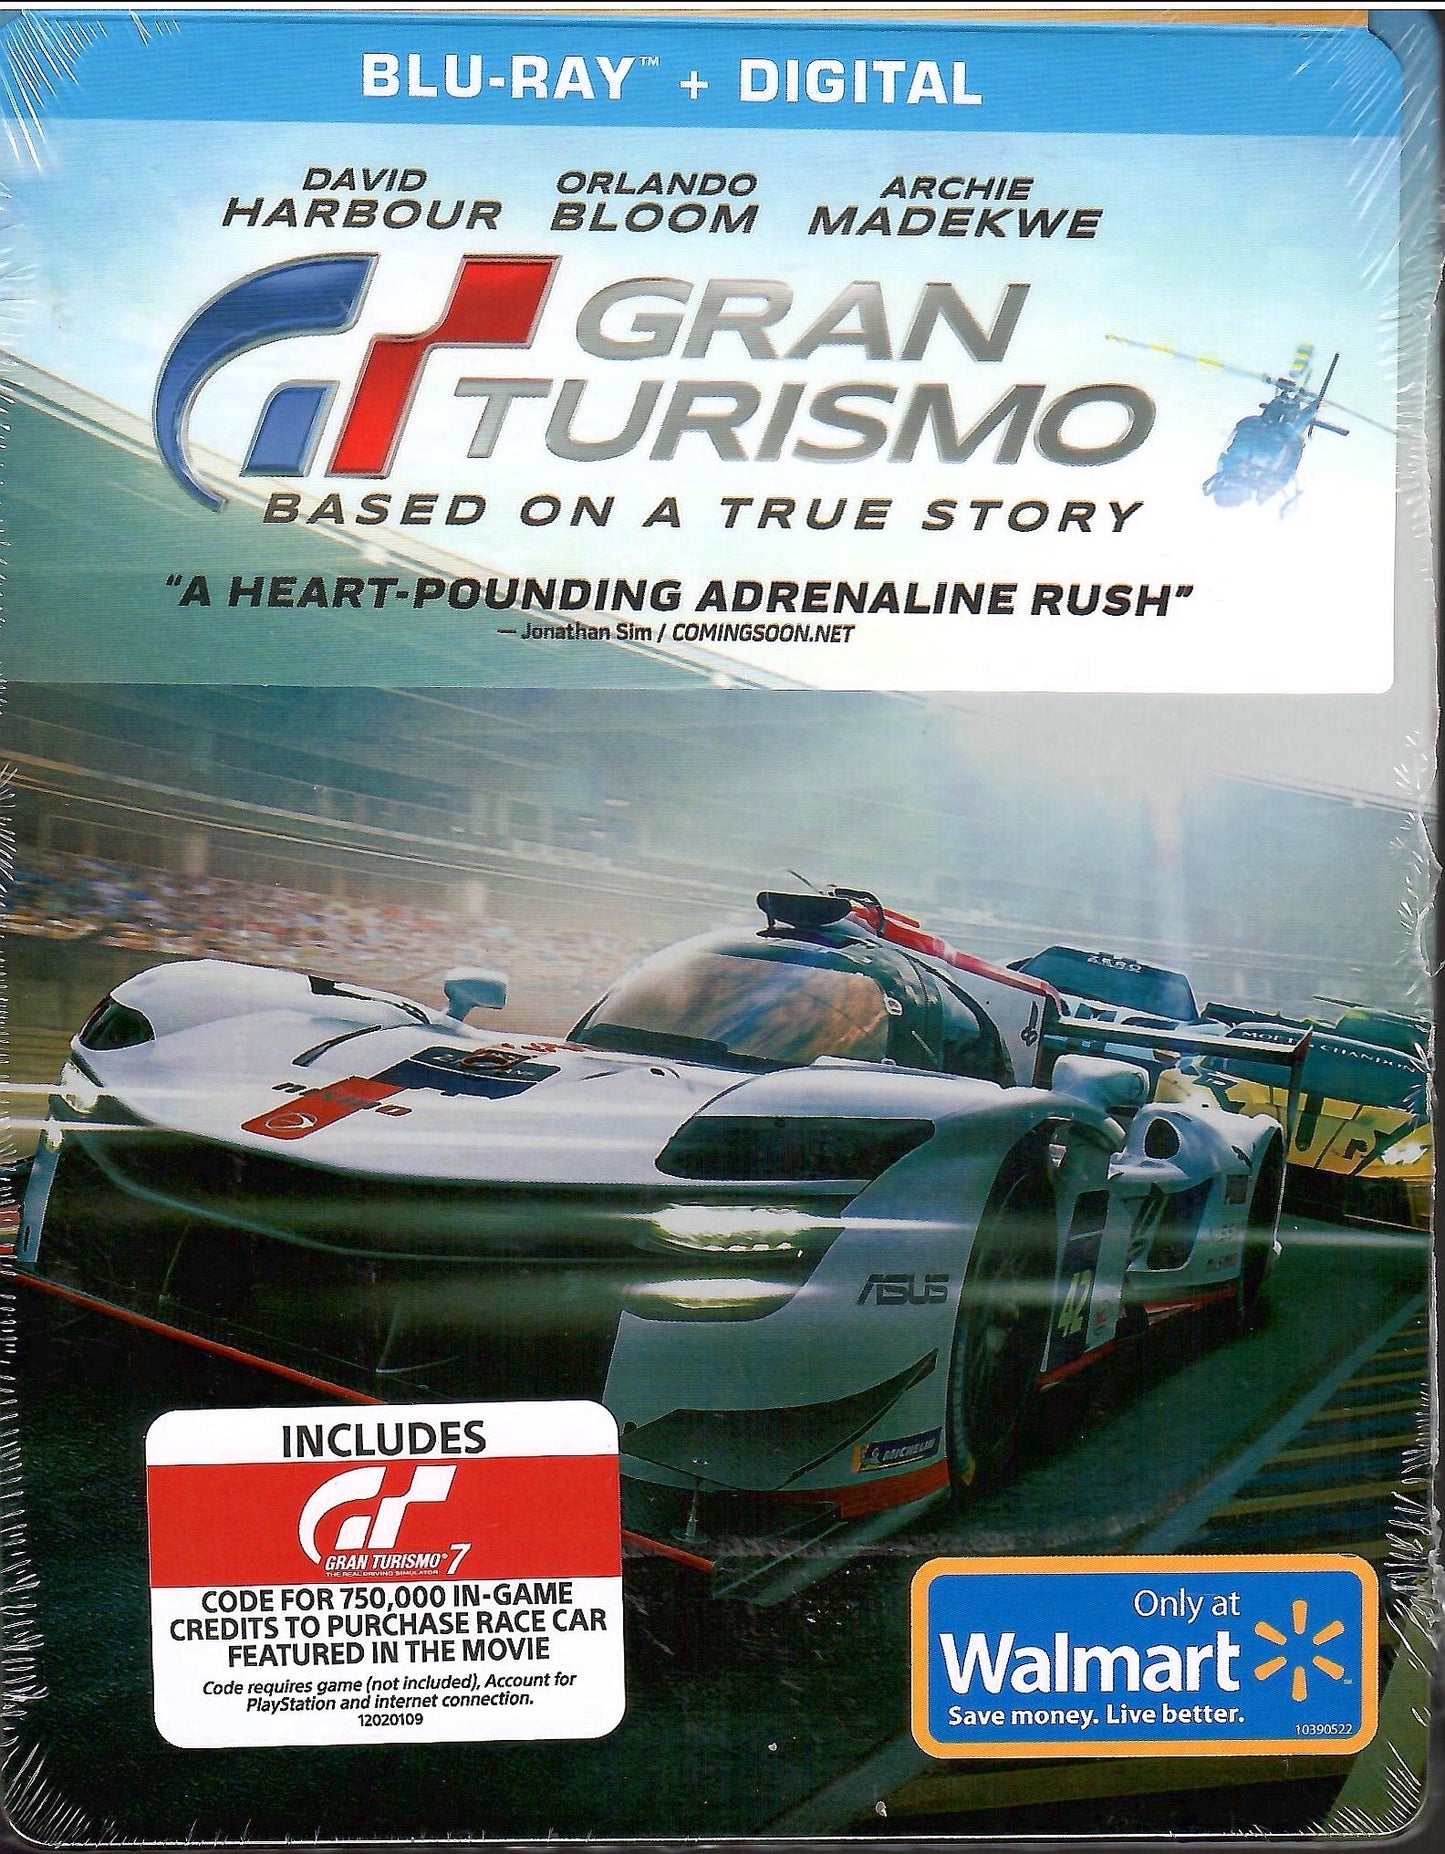 Gran Turismo - Blu-ray + Digital